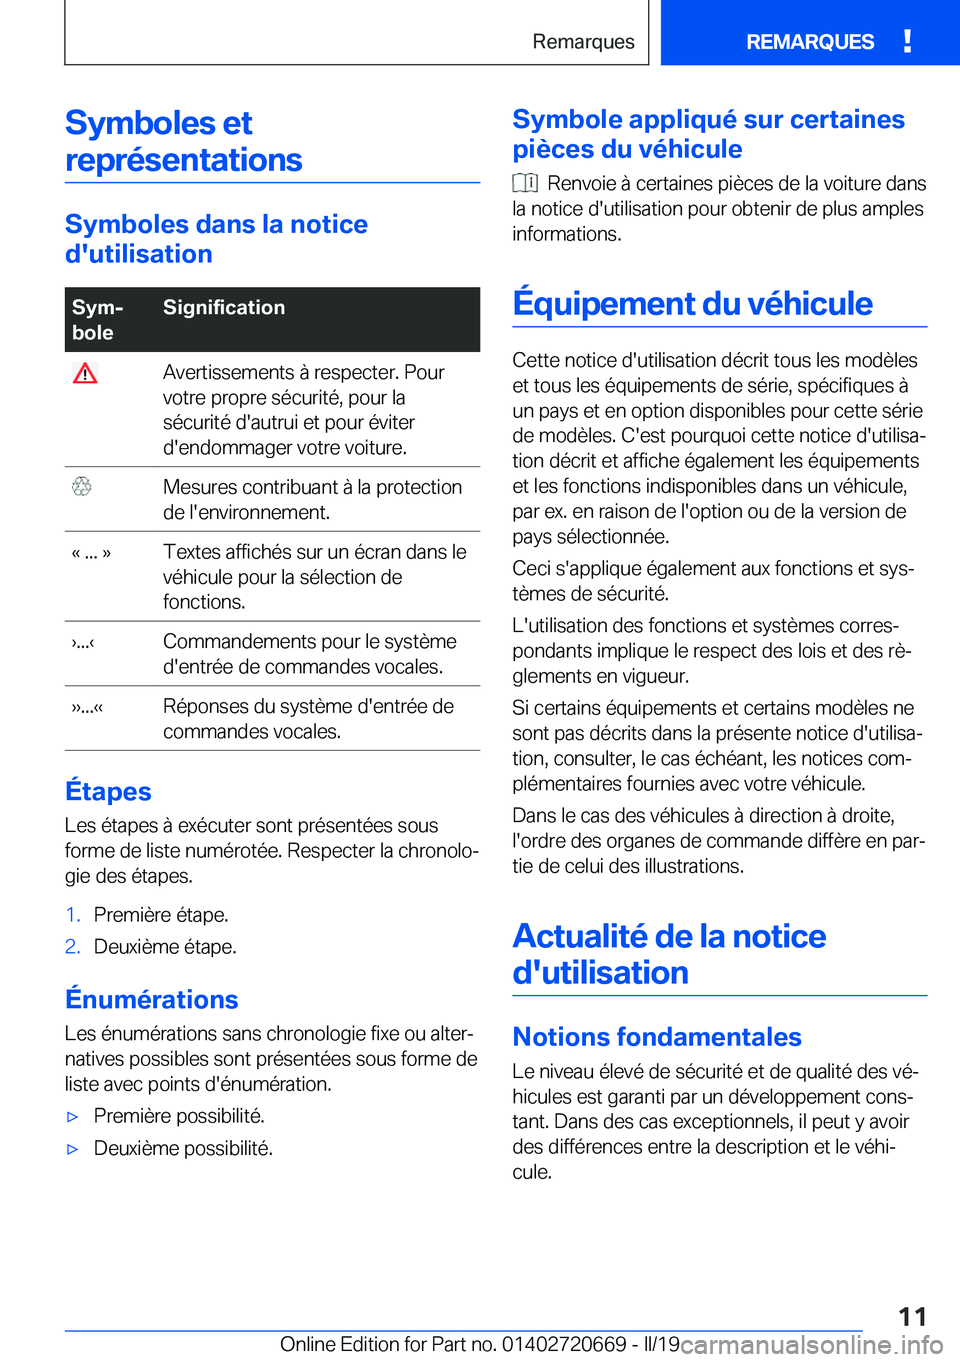 BMW M5 2019  Notices Demploi (in French) �S�y�m�b�o�l�e�s��e�t�r�e�p�r�é�s�e�n�t�a�t�i�o�n�s
�S�y�m�b�o�l�e�s��d�a�n�s��l�a��n�o�t�i�c�e
�d�'�u�t�i�l�i�s�a�t�i�o�n
�S�y�mj
�b�o�l�e�S�i�g�n�i�f�i�c�a�t�i�o�n��A�v�e�r�t�i�s�s�e�m�e�